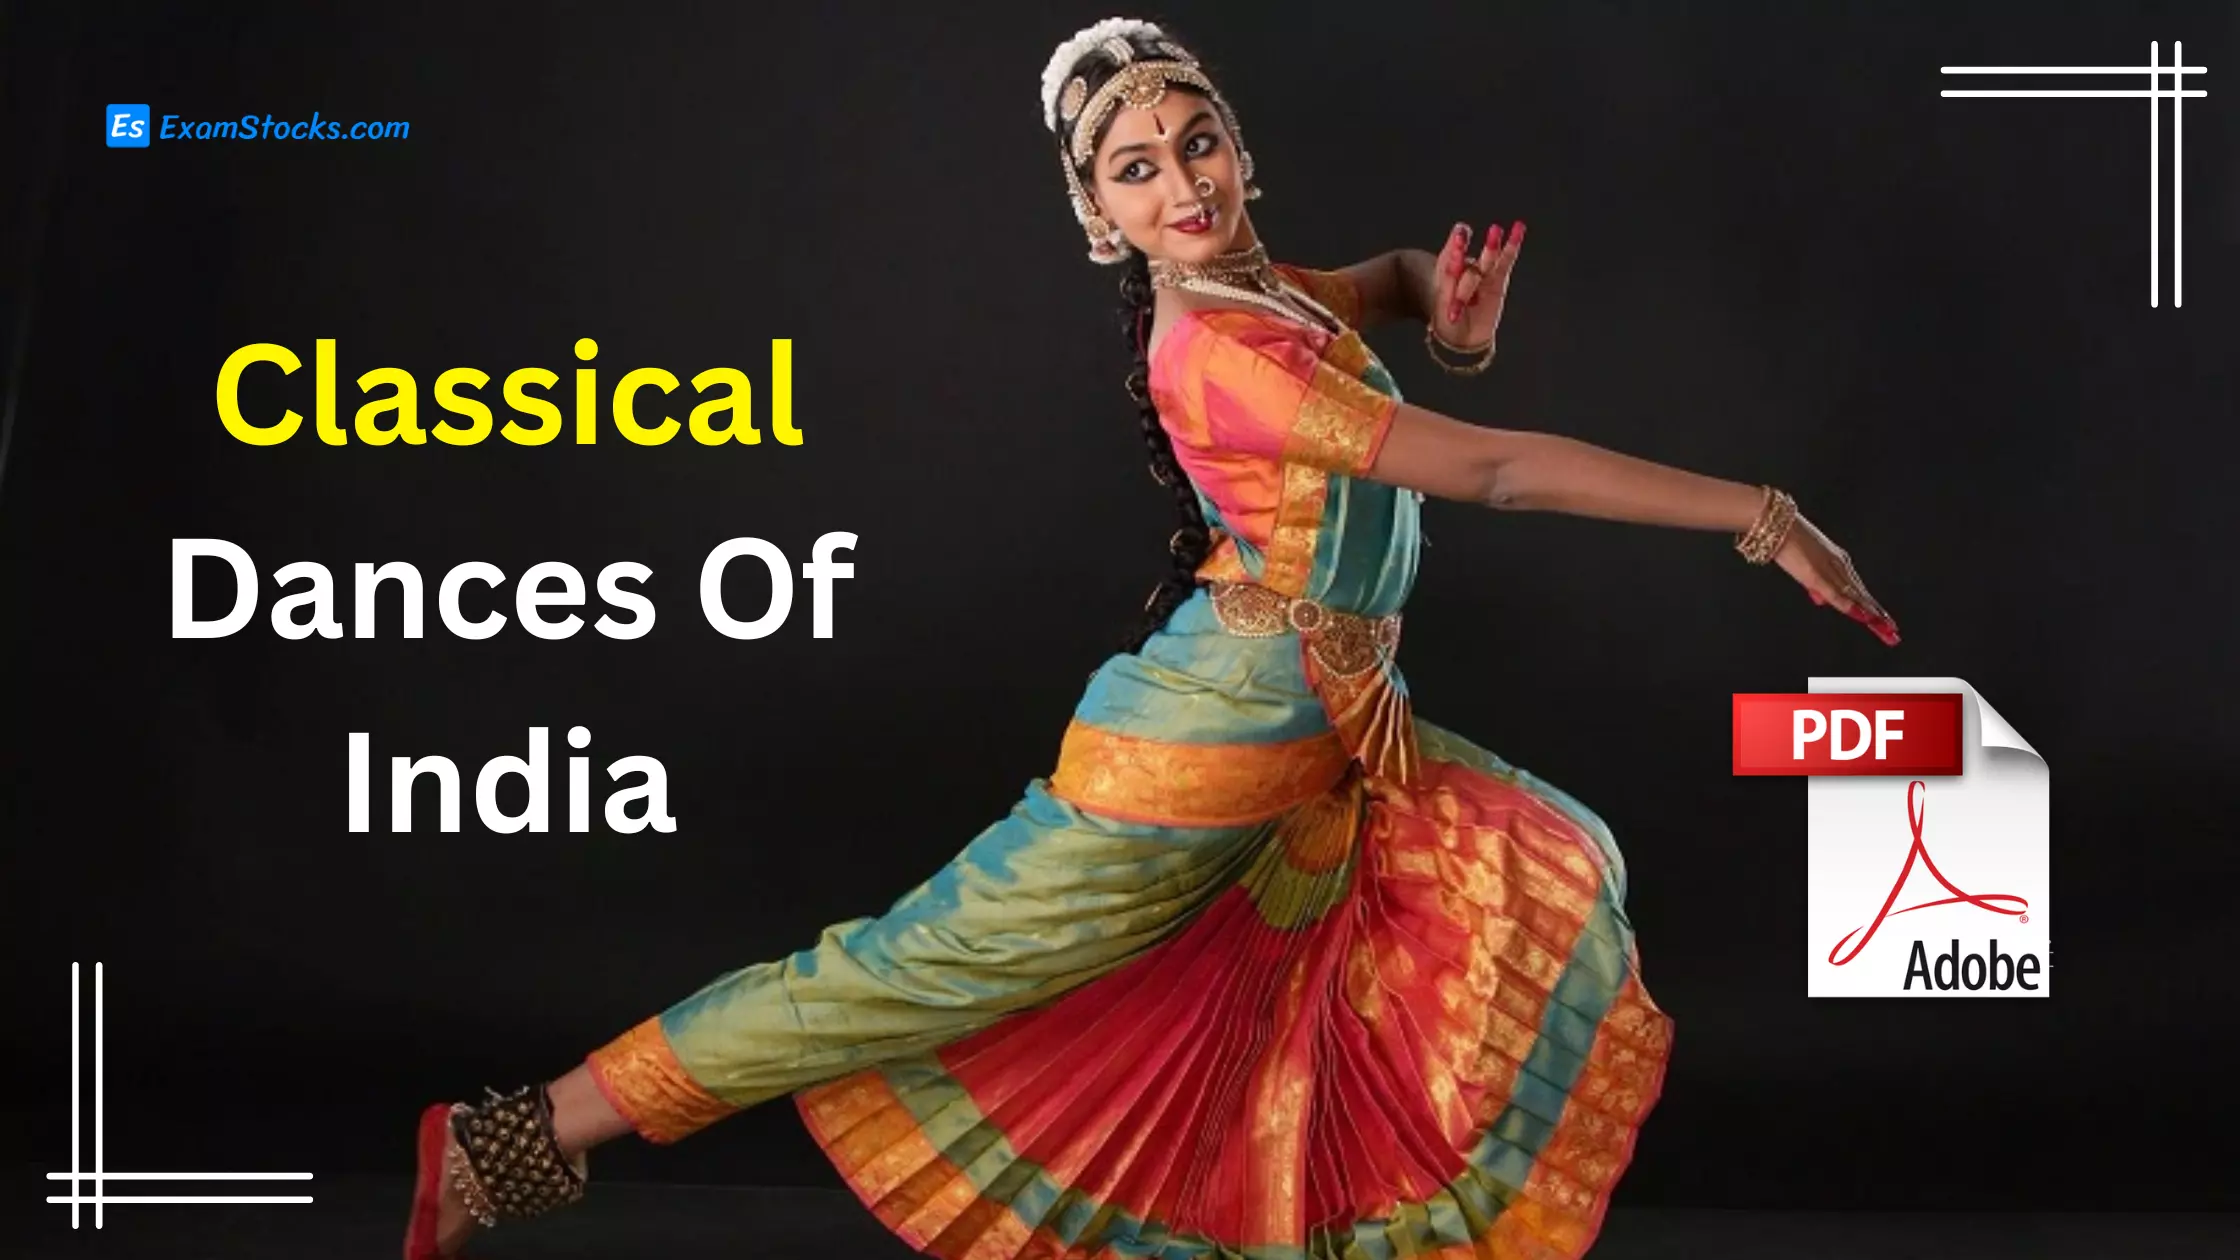 Classical Dances Of India PDF.webp